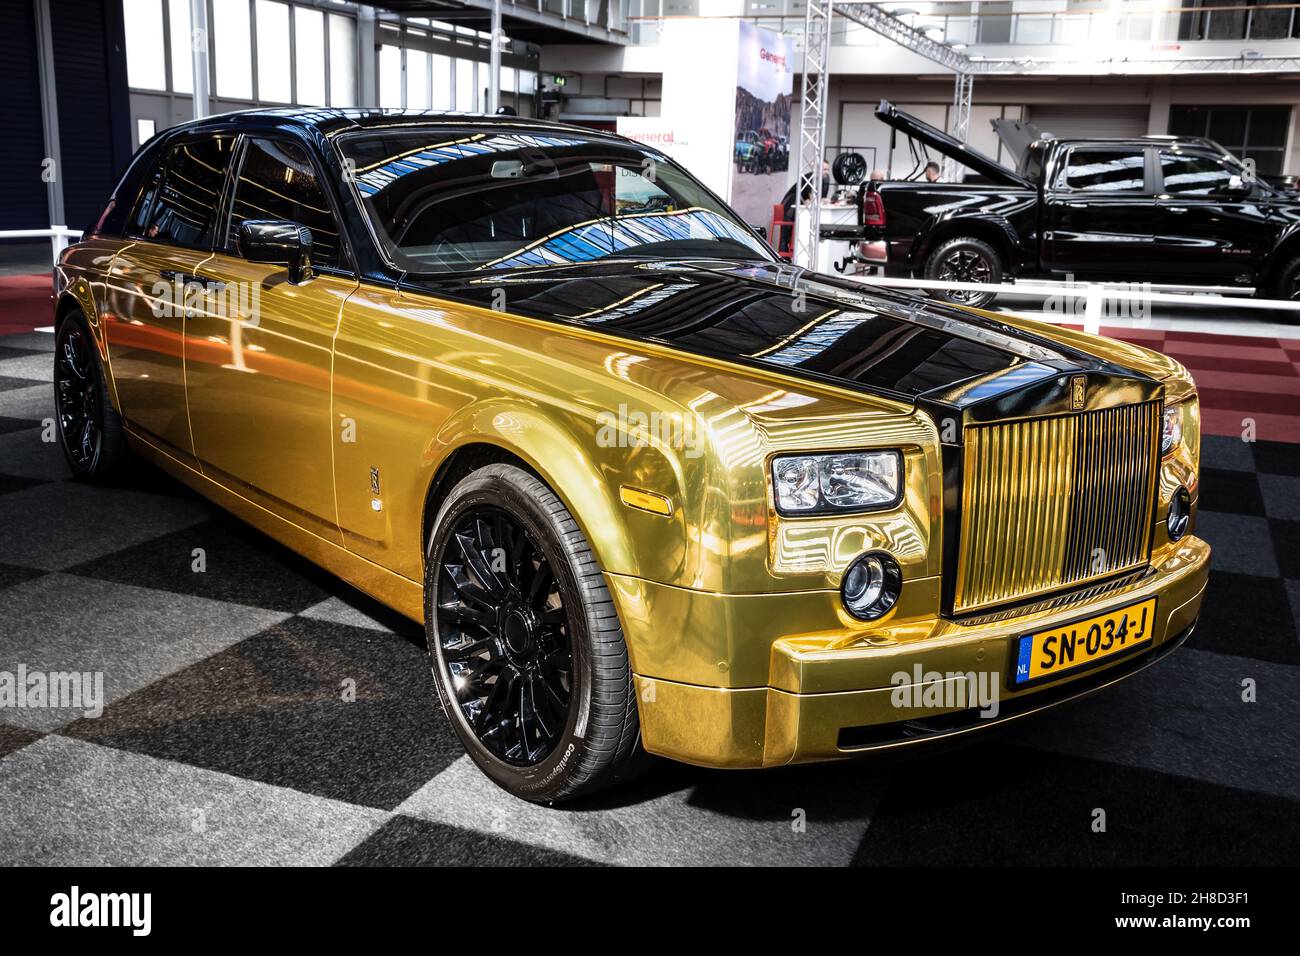 Rolls Royce Phantom RR01 voiture de luxe présentée au salon de l'automobile d'Amsterdam.5 avril 2019. Banque D'Images